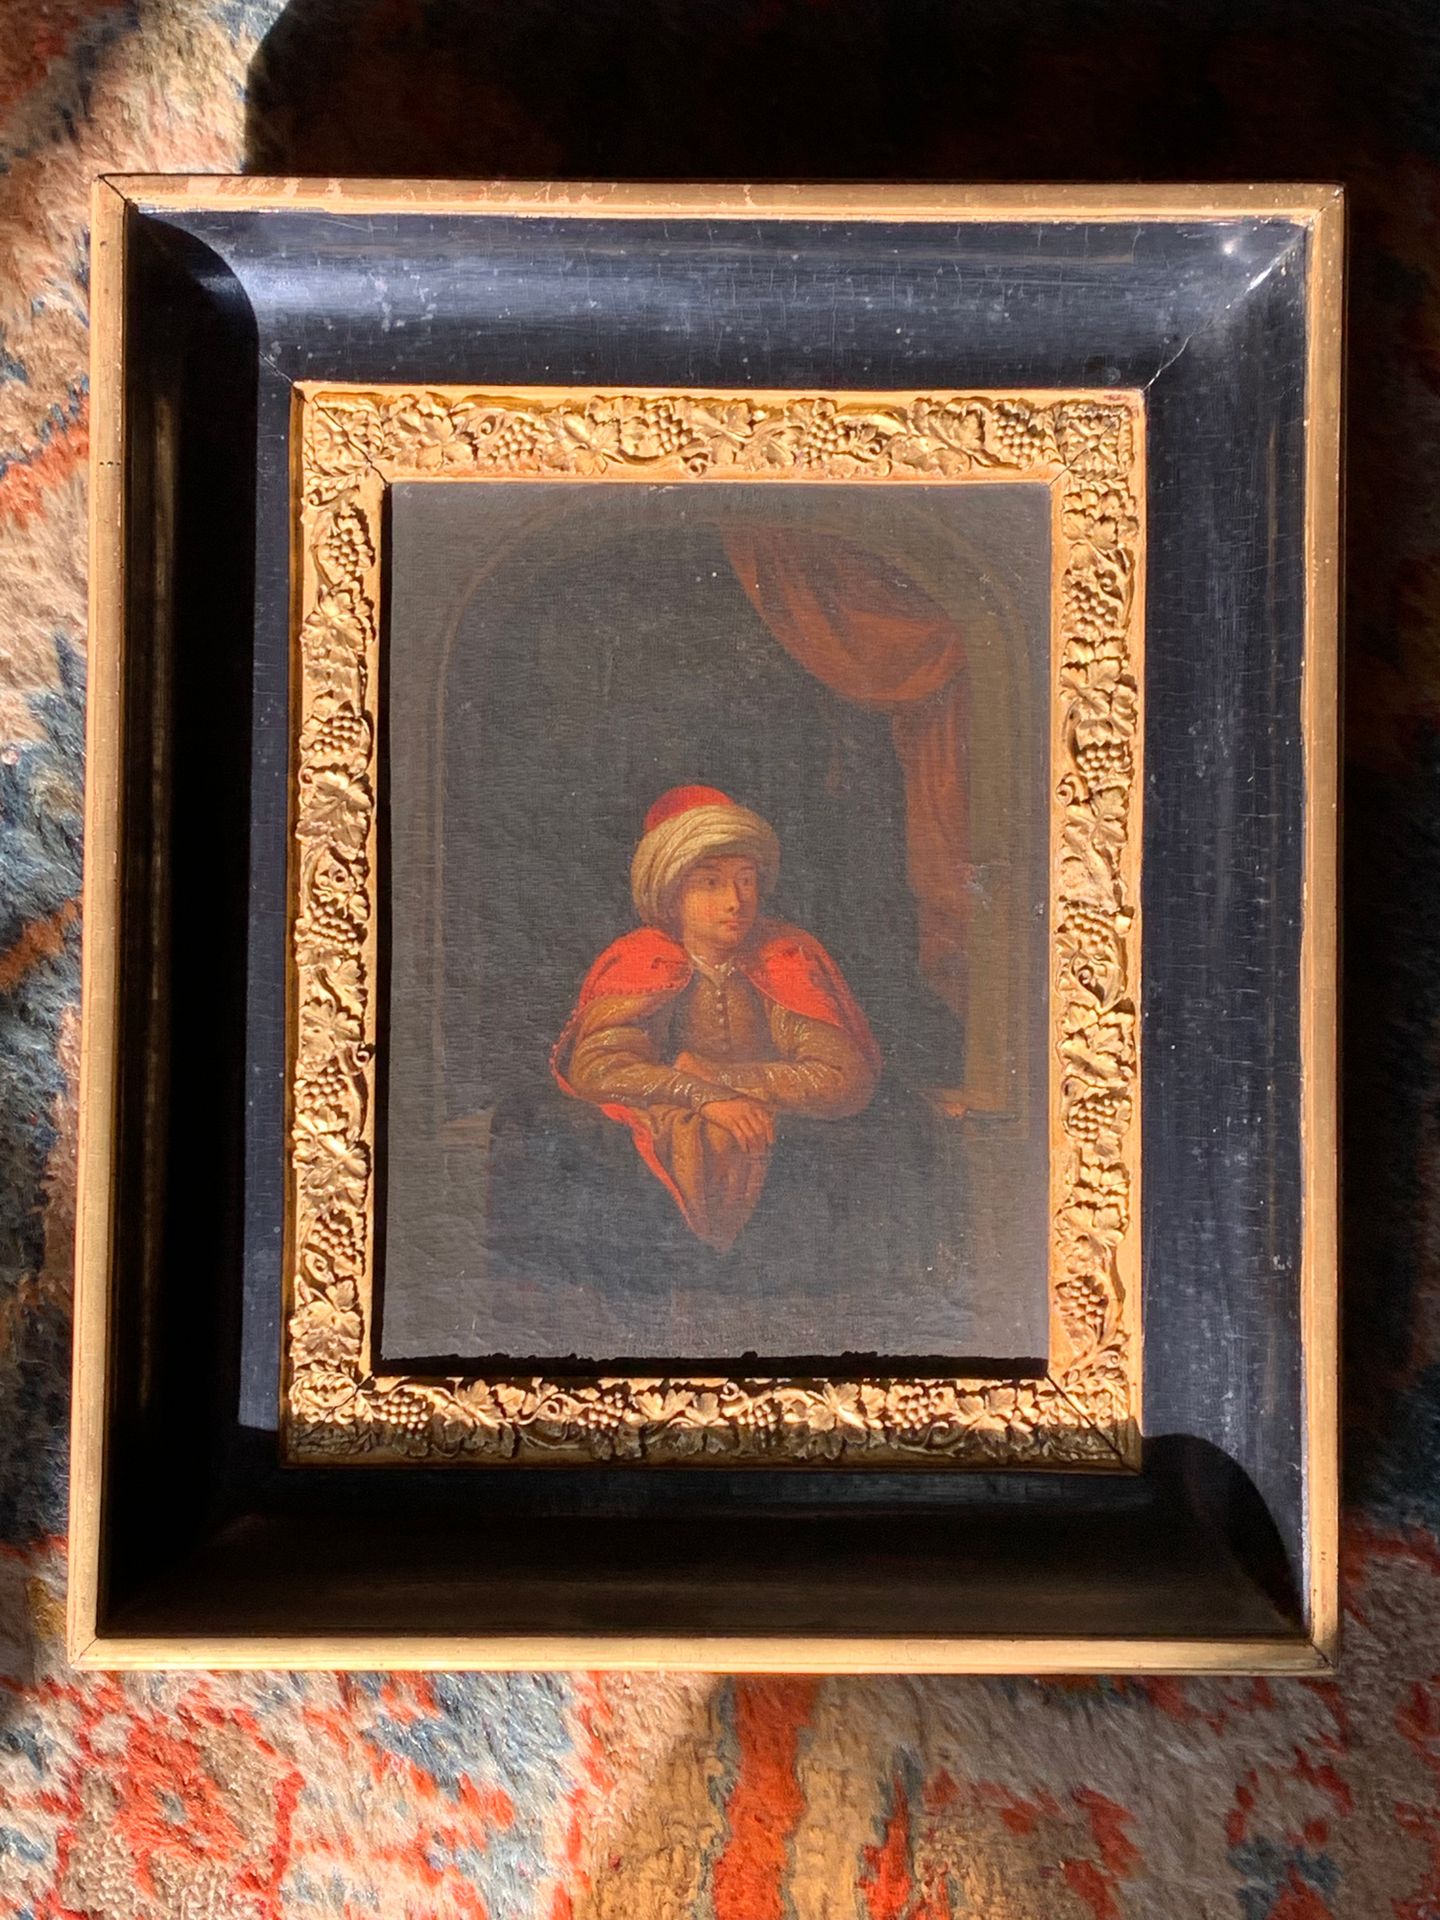 Suiveur de JAN van MIERIS (1660 - 1690) "年轻的东方人"。
布面油画
23 x 18厘米